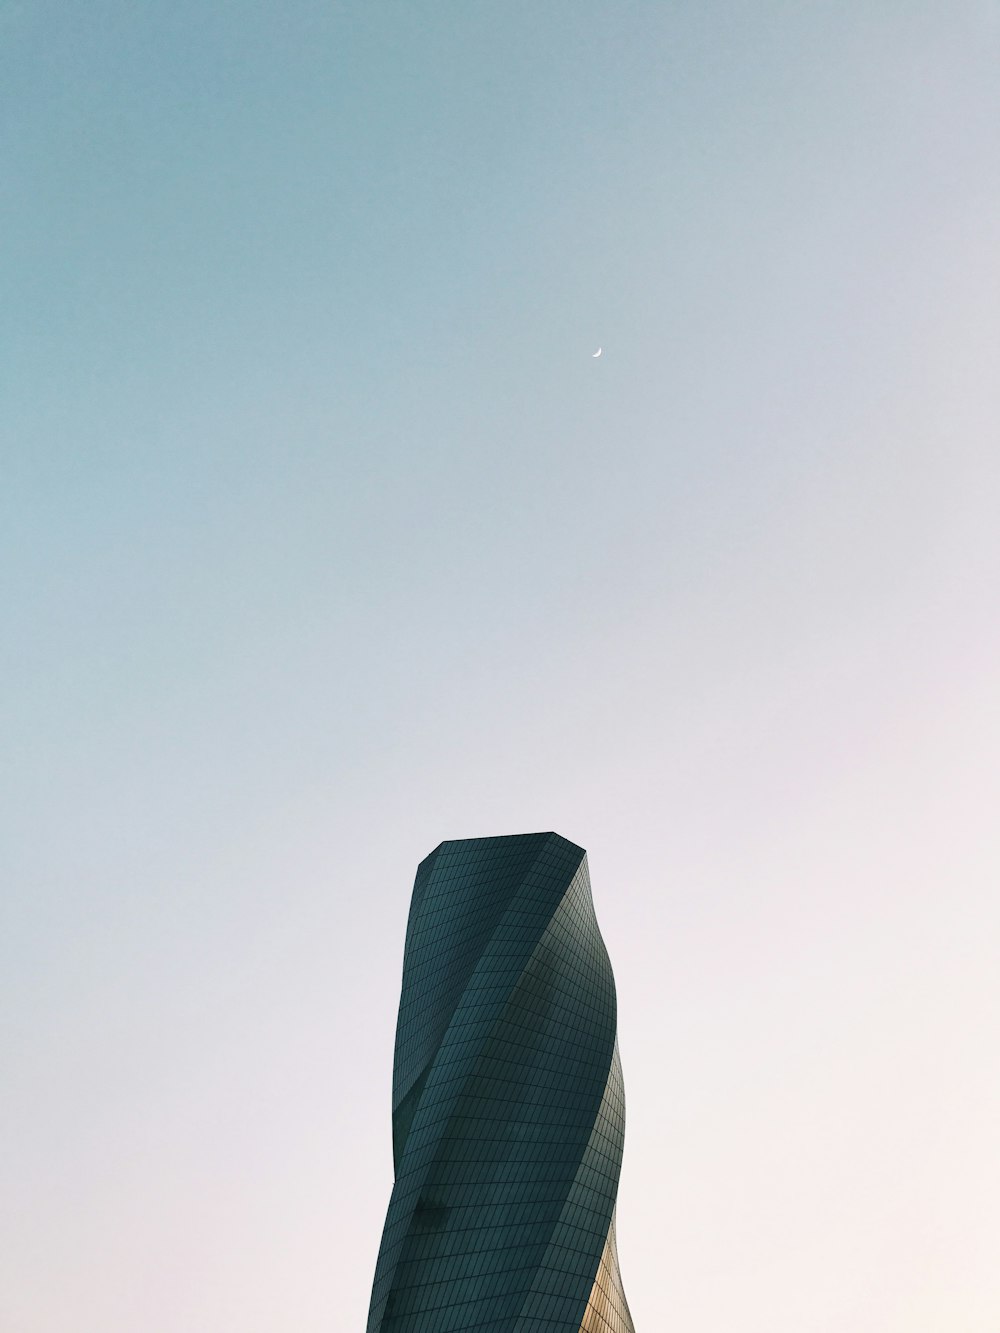 Fotografie aus der Wurmperspektive des grauen Turms unter klarem Himmel